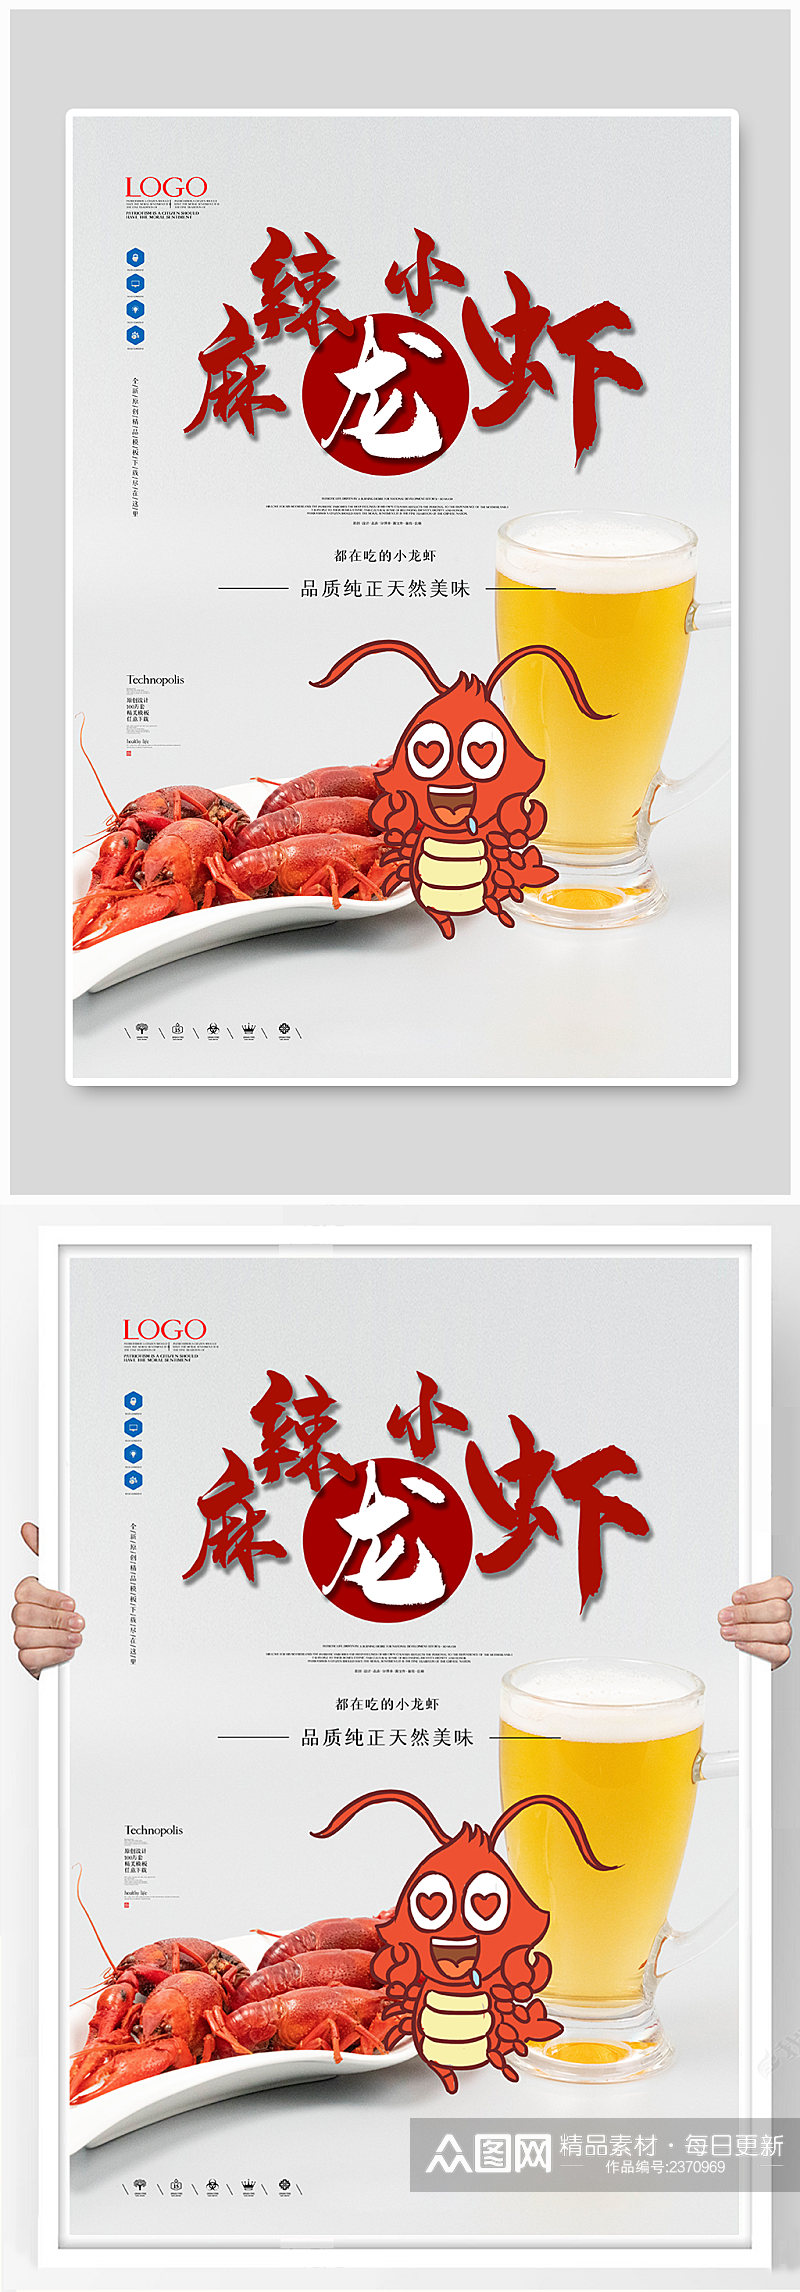 简洁创意美食餐饮小龙虾宵夜海报素材